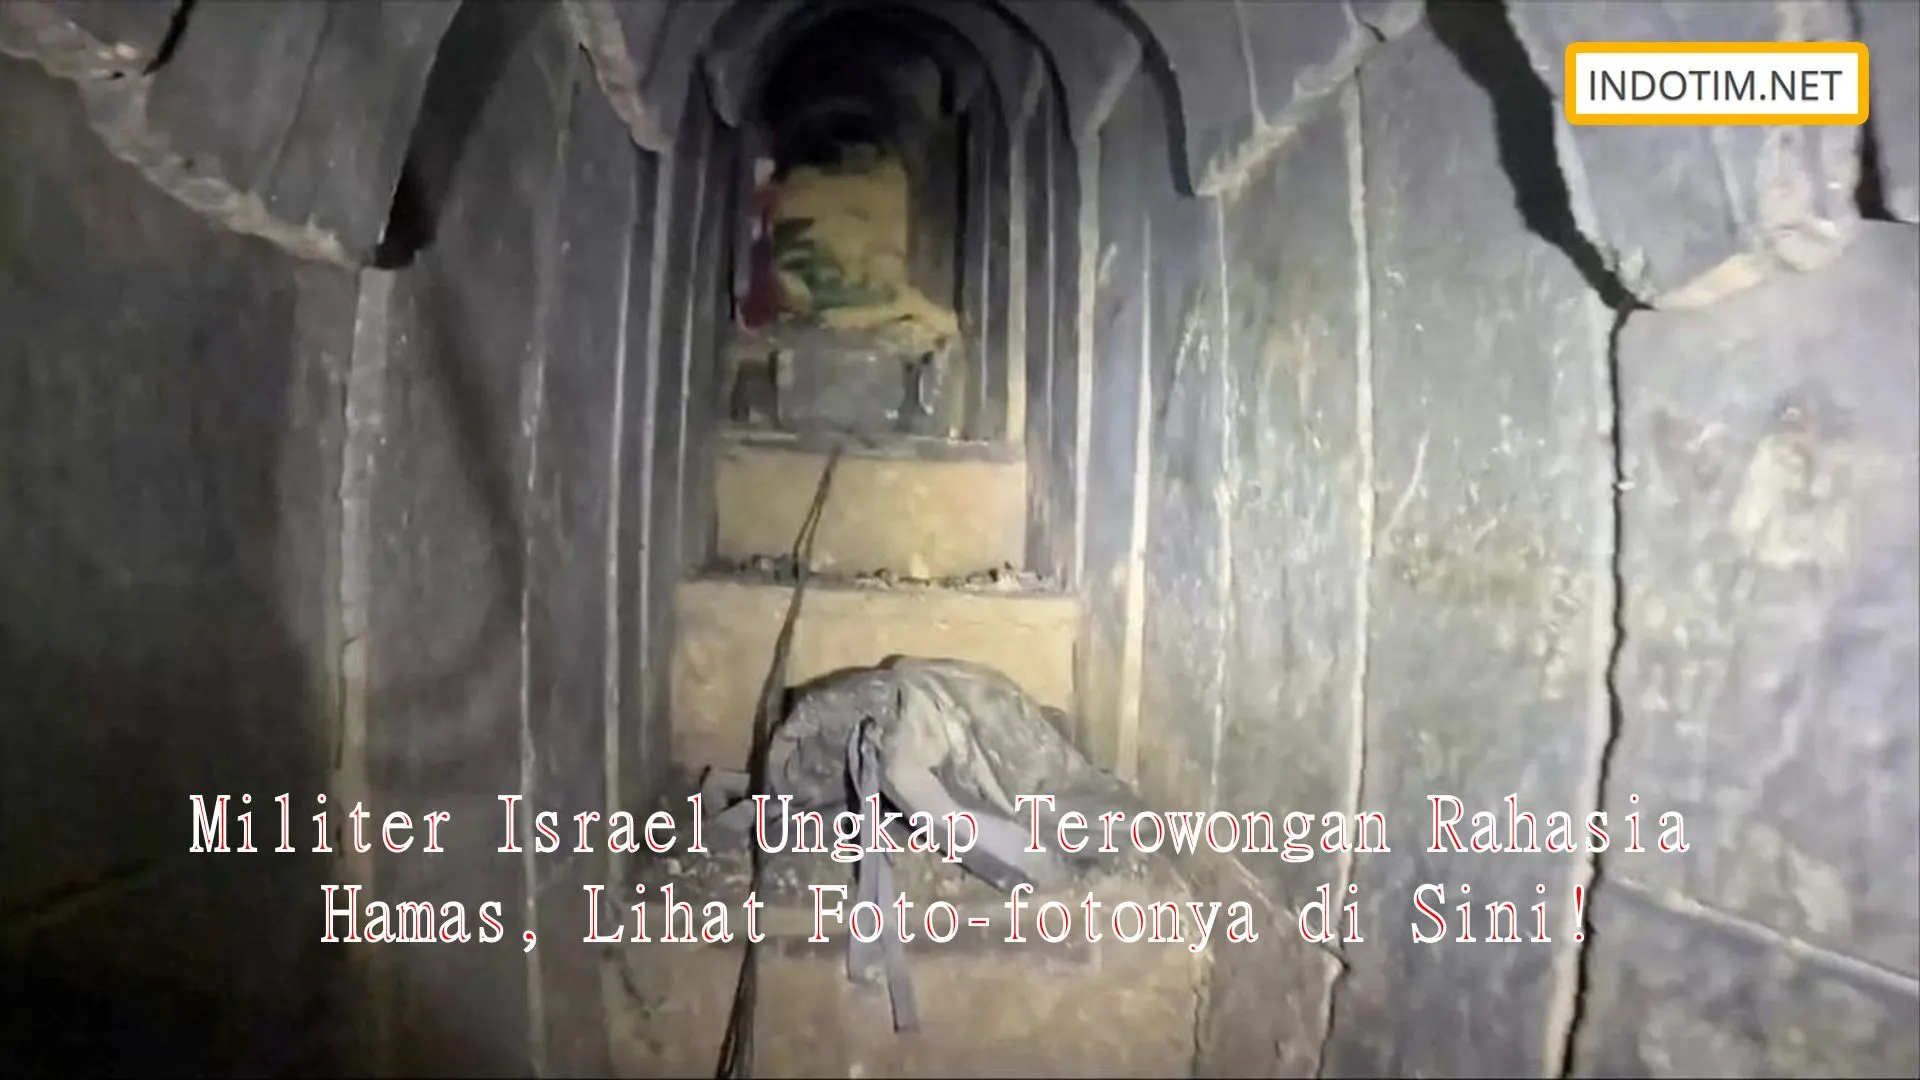 Militer Israel Ungkap Terowongan Rahasia Hamas, Lihat Foto-fotonya di Sini!